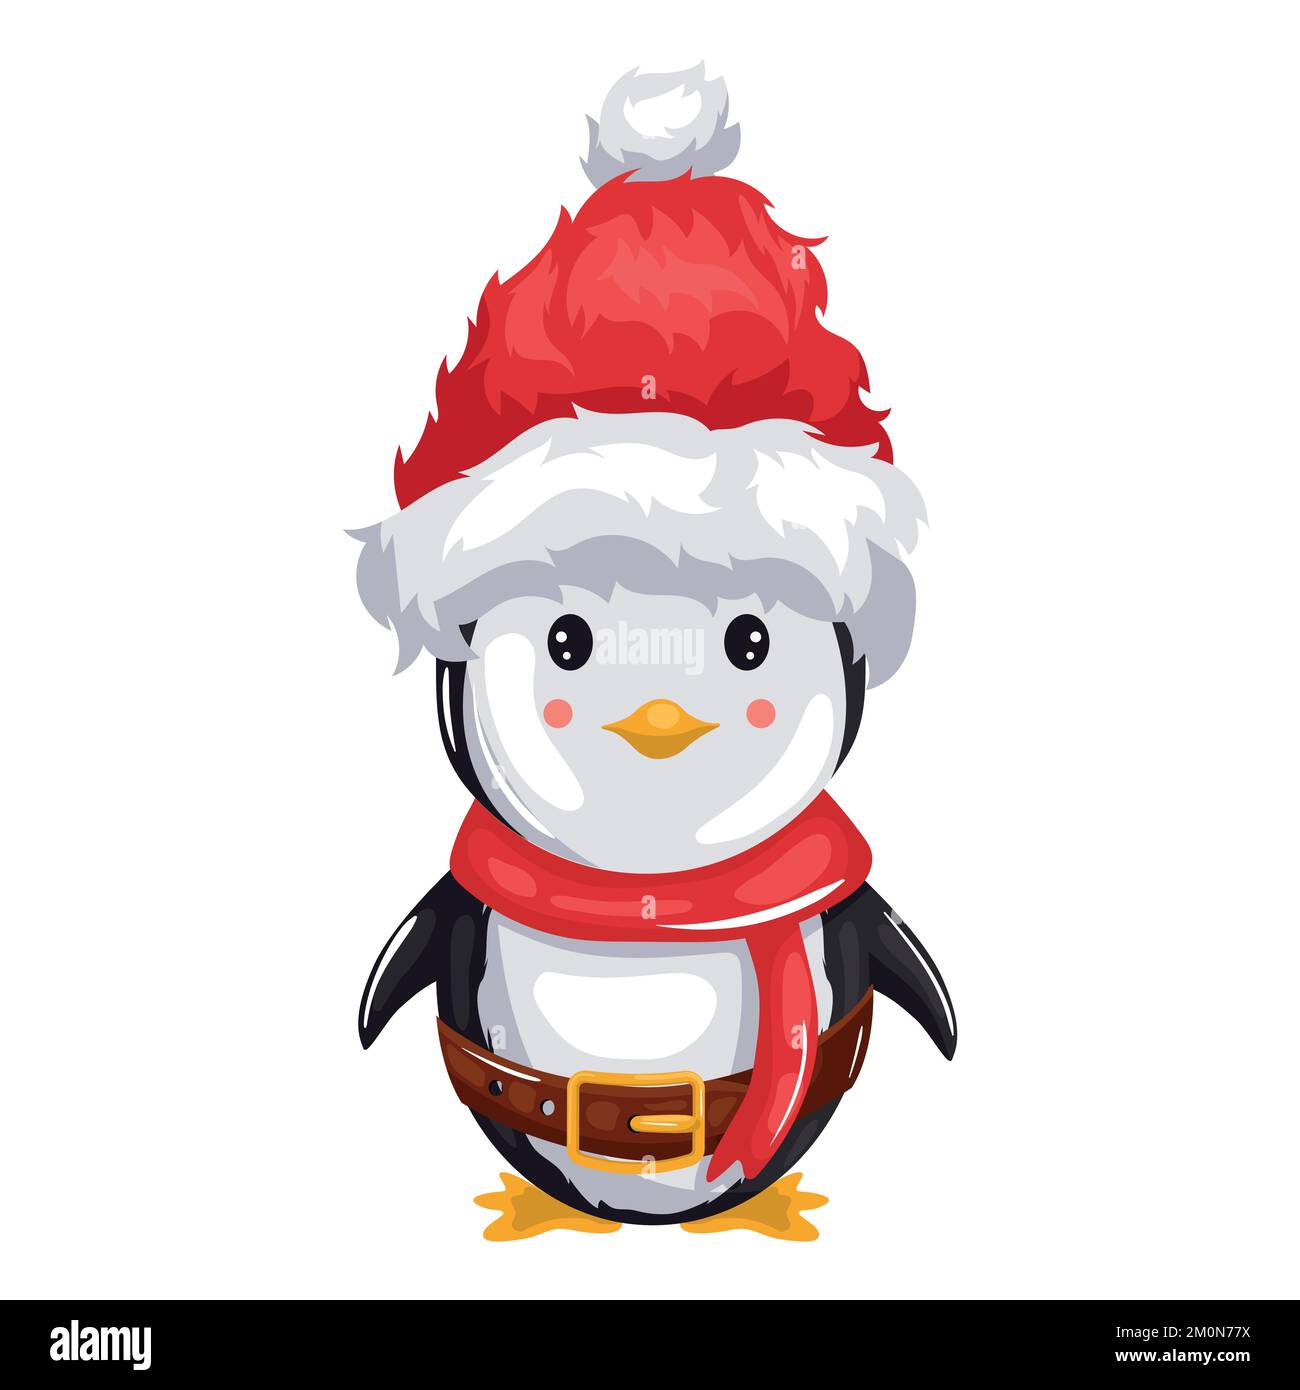 Süßer kleiner Pinguin mit weihnachtsmann-Hut und rotem Schal als fröhliche weihnachtskarte Stock Vektor